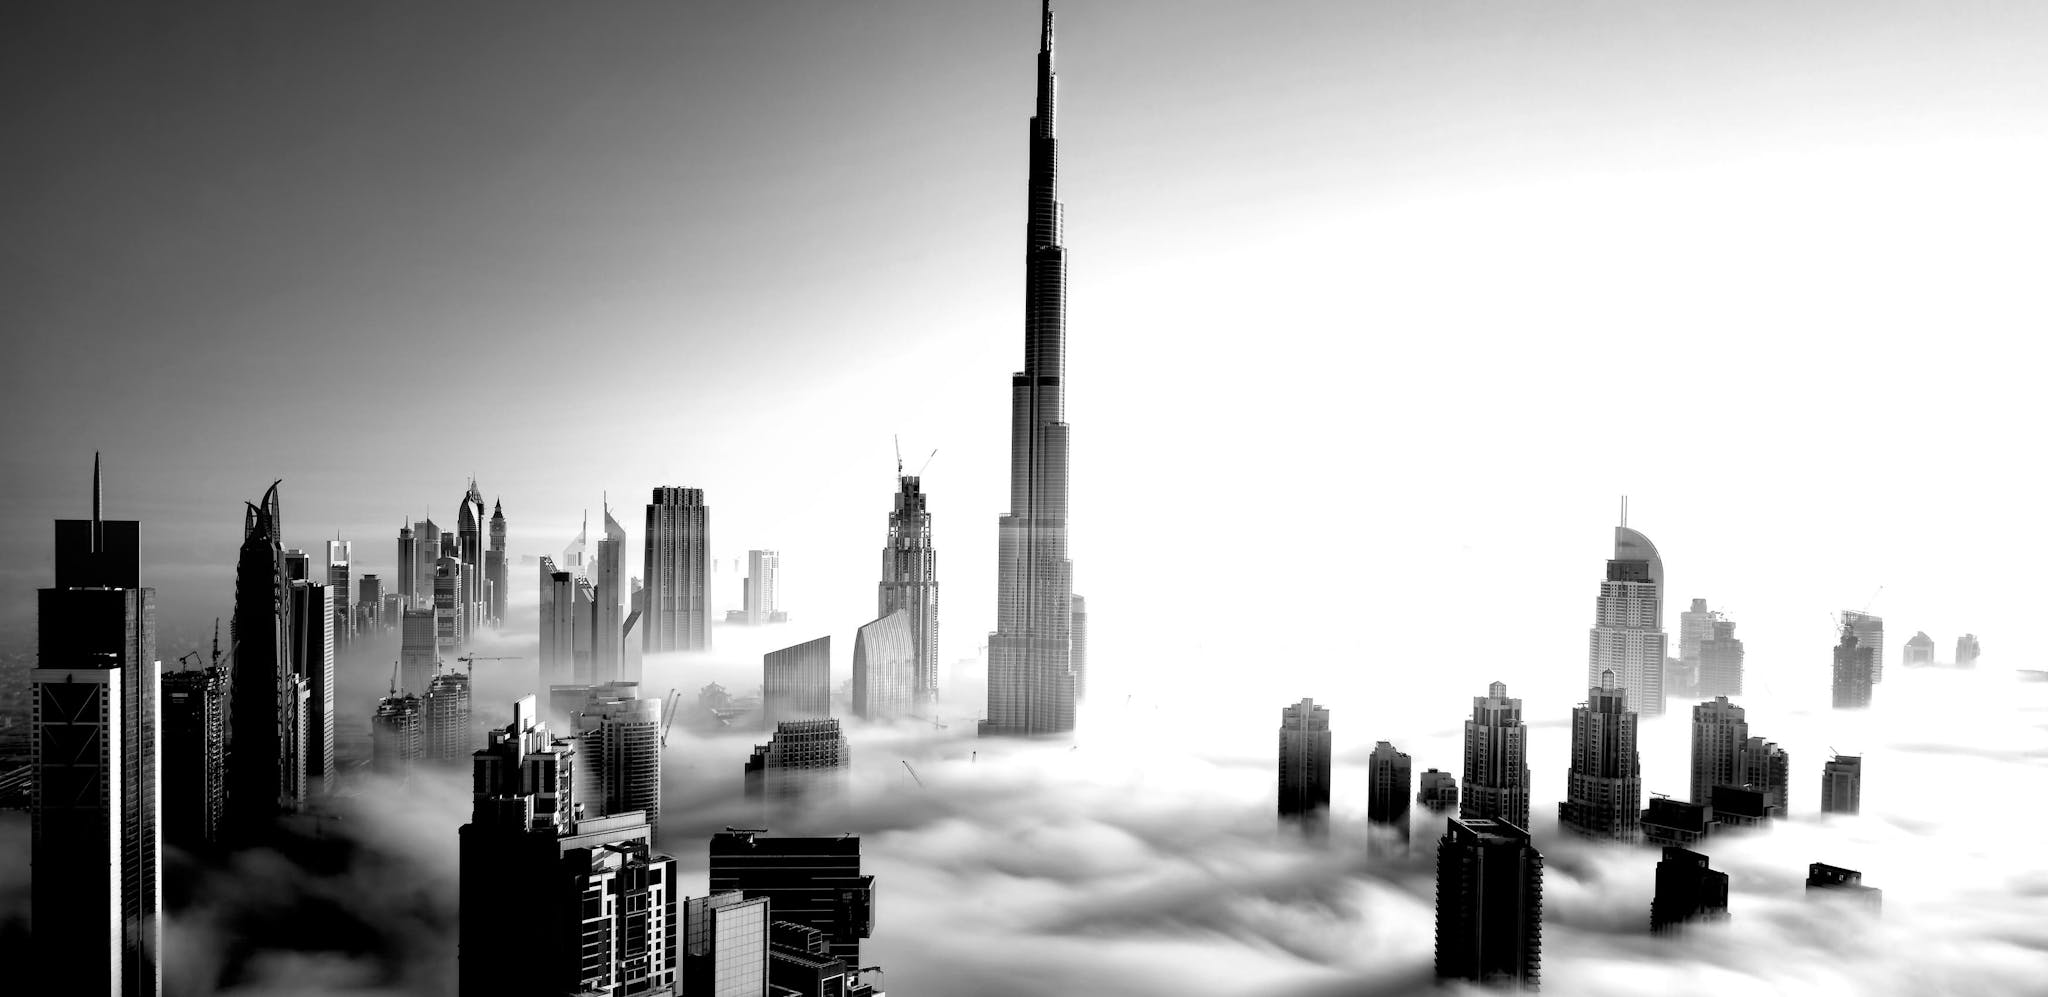 The Dubai skyline above cloud level